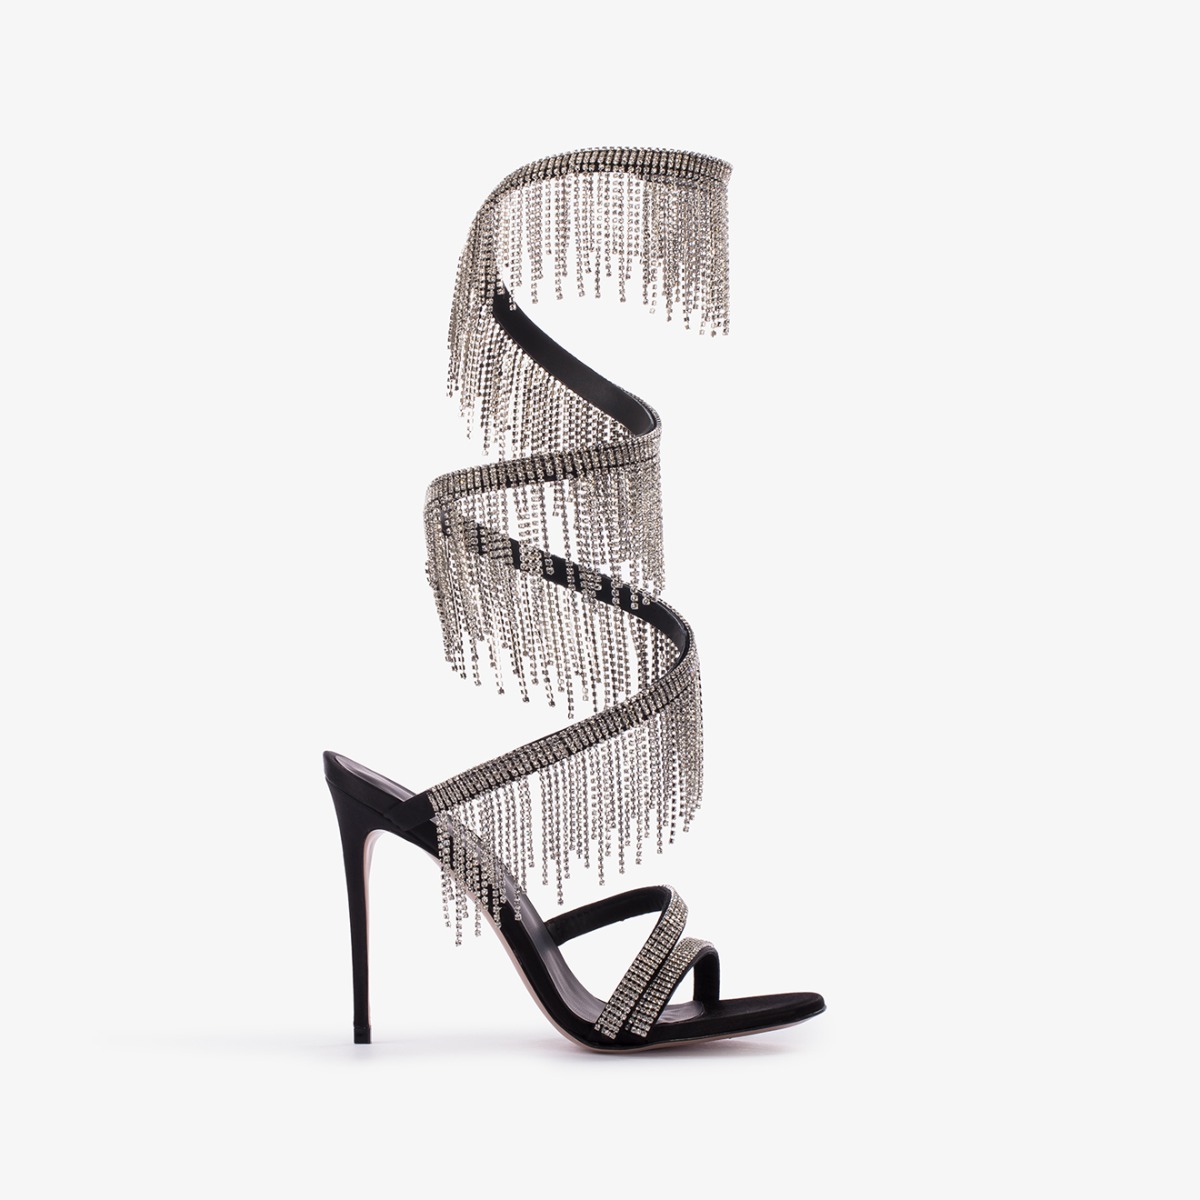 Sandale satin noir avec franges argentées - Le Silla